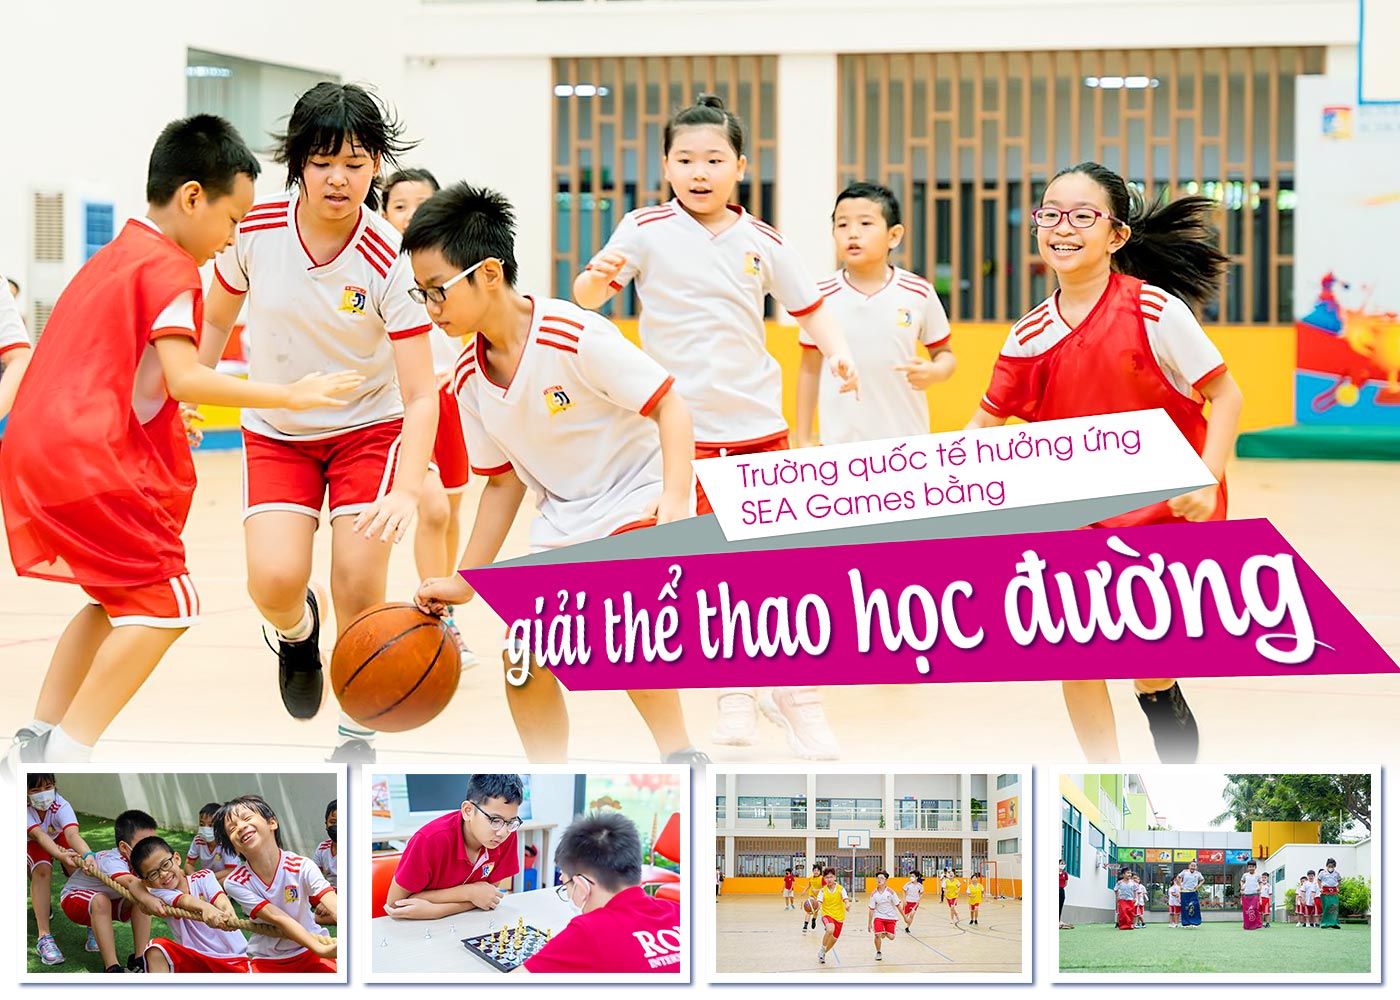 Trường quốc tế hưởng ứng SEA Games bằng giải thể thao học đường - Ảnh 1